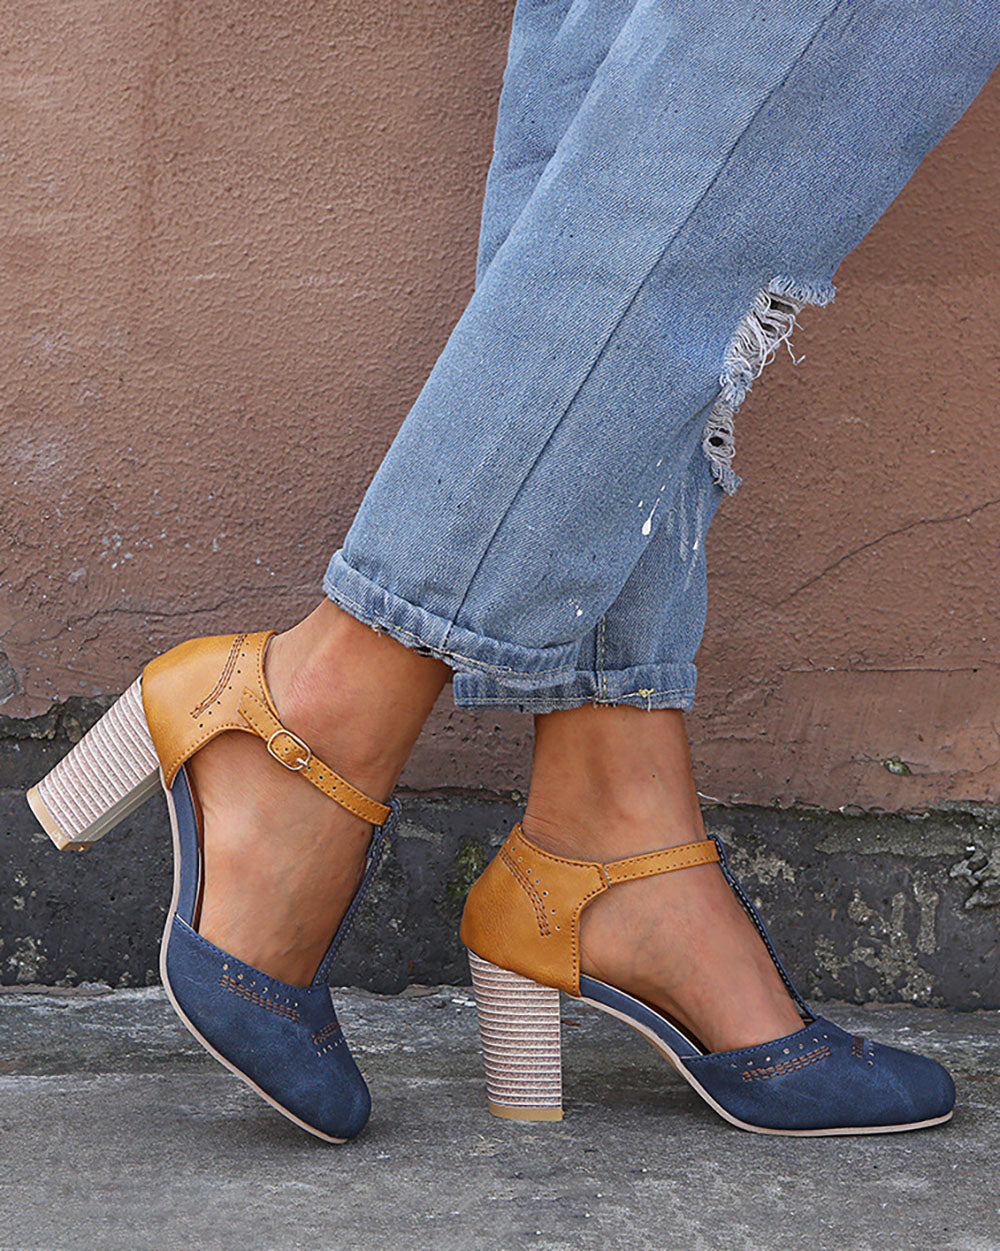 Sandalias vintage con bloques de color Zapatos casuales con hebilla de tacón grueso